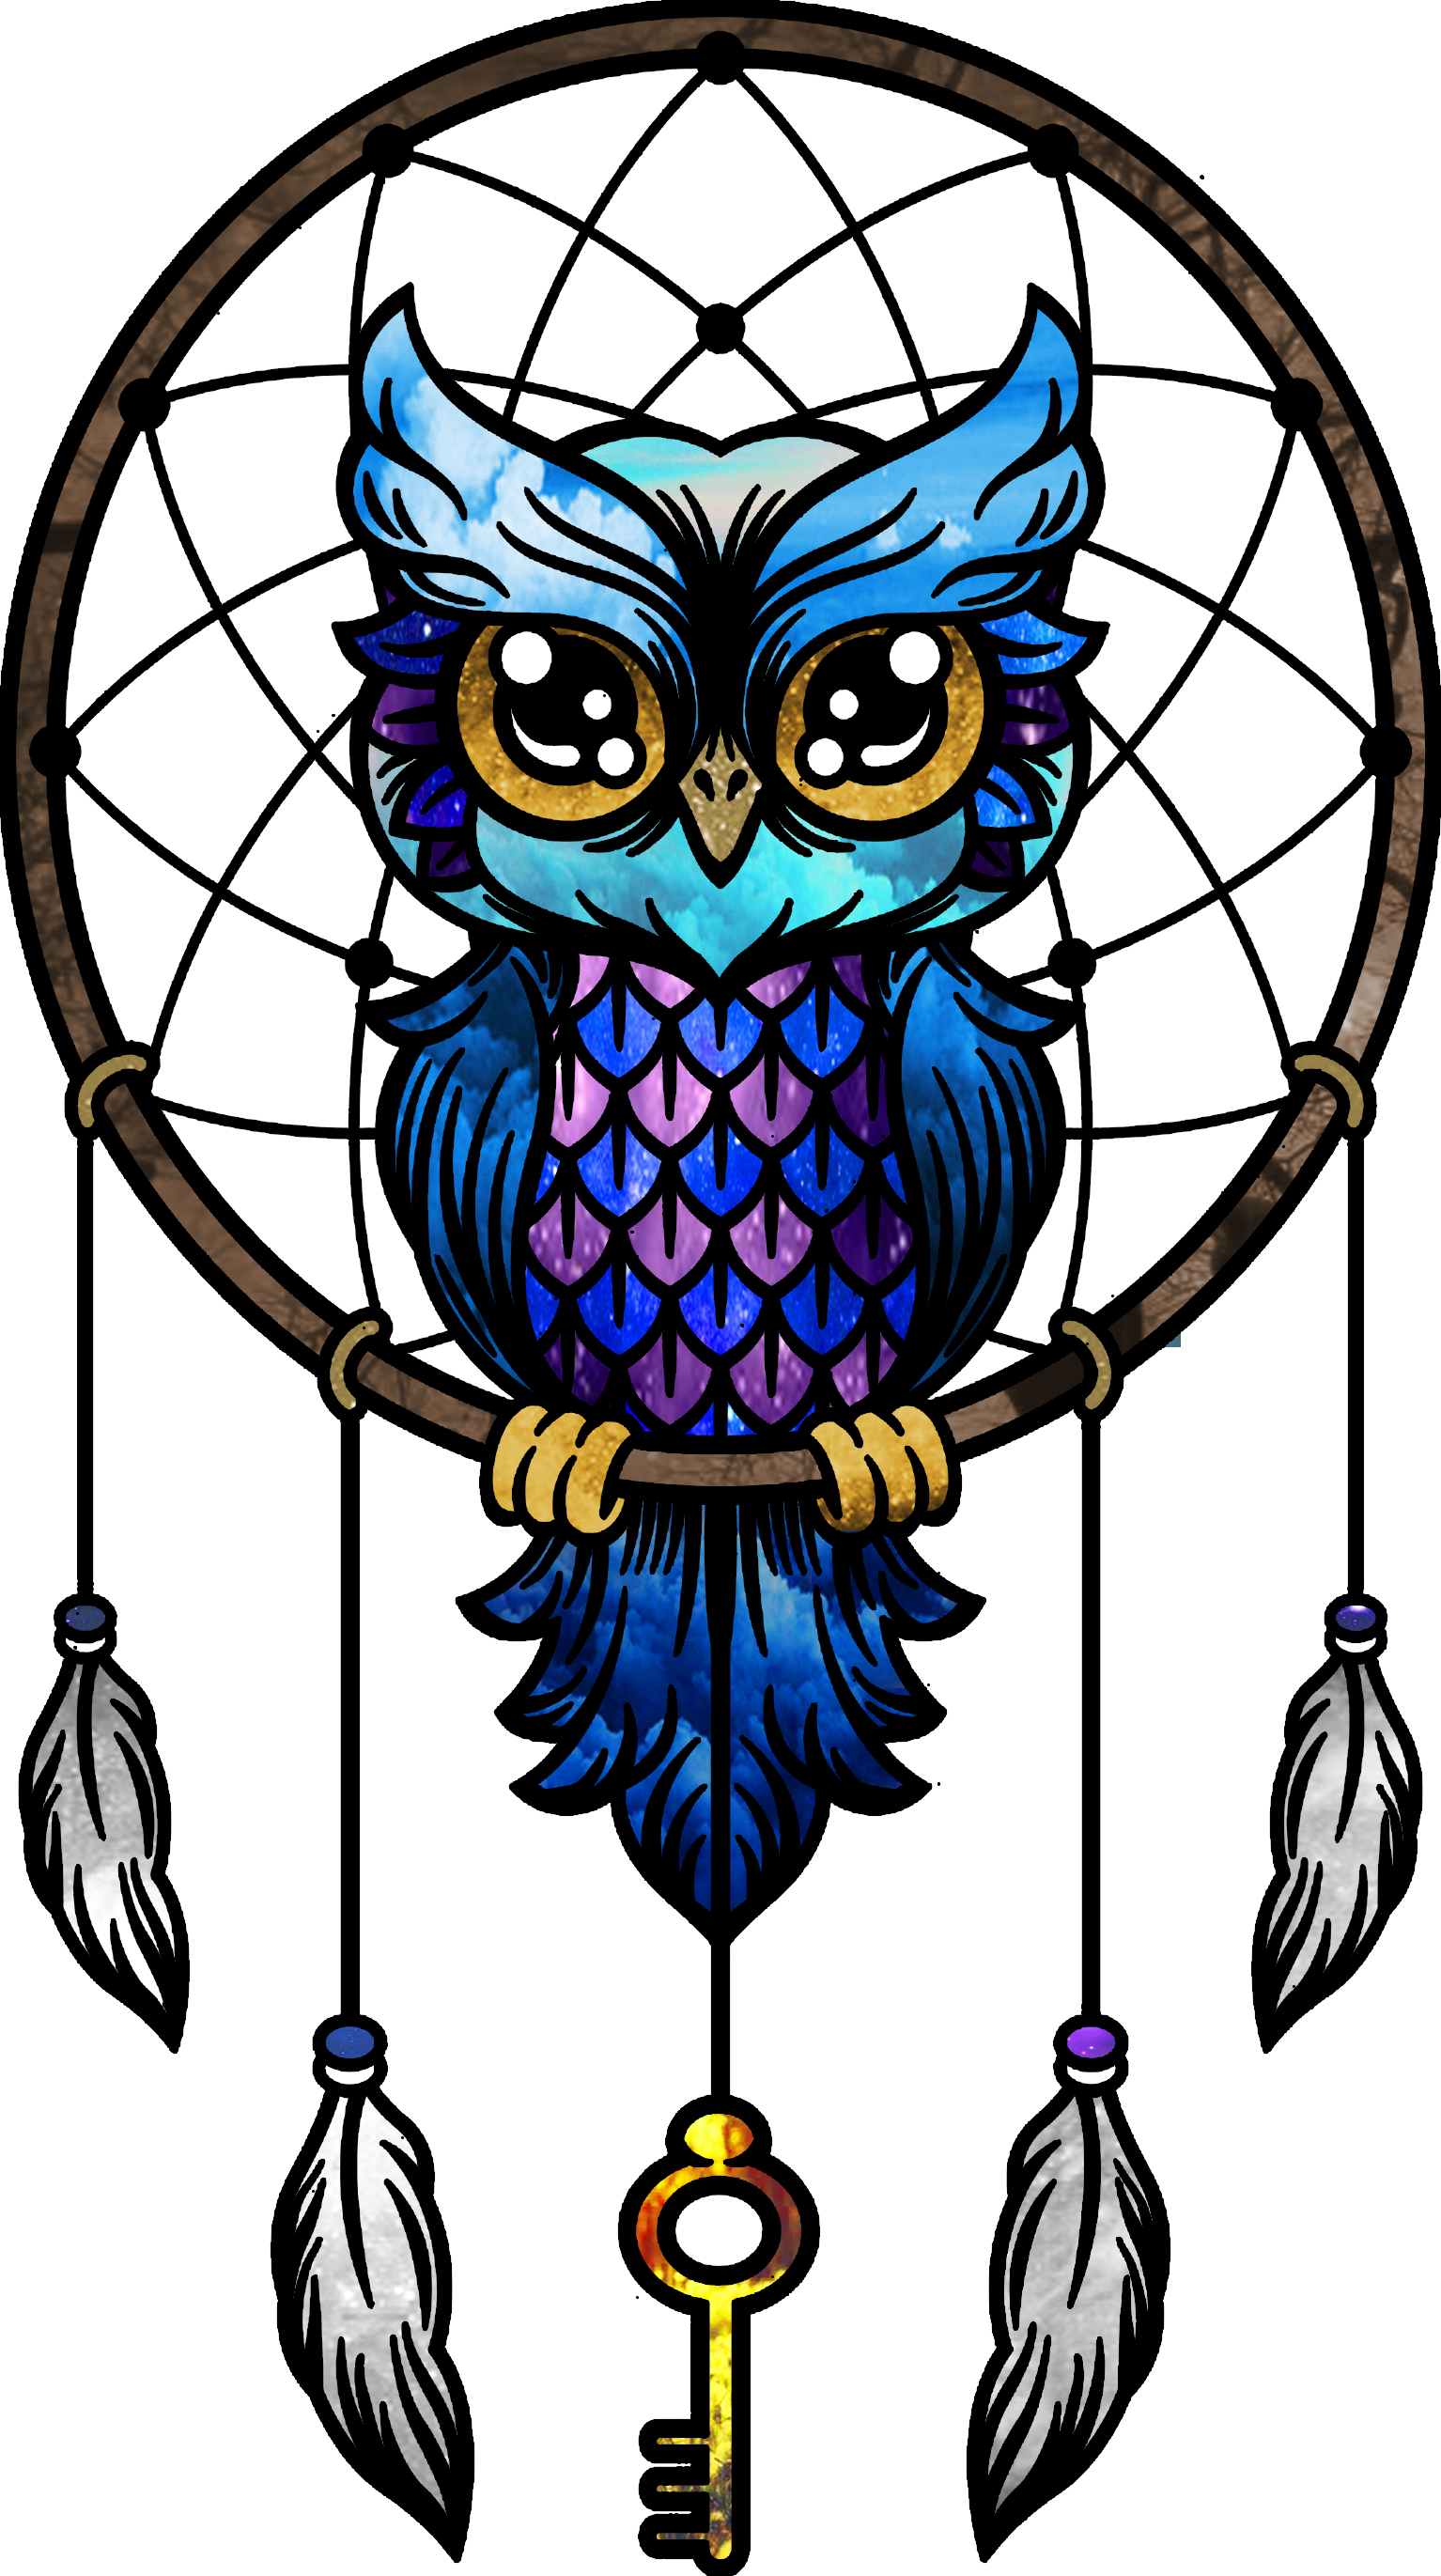 Owl Dream Catcher Drawing - HD Wallpaper 